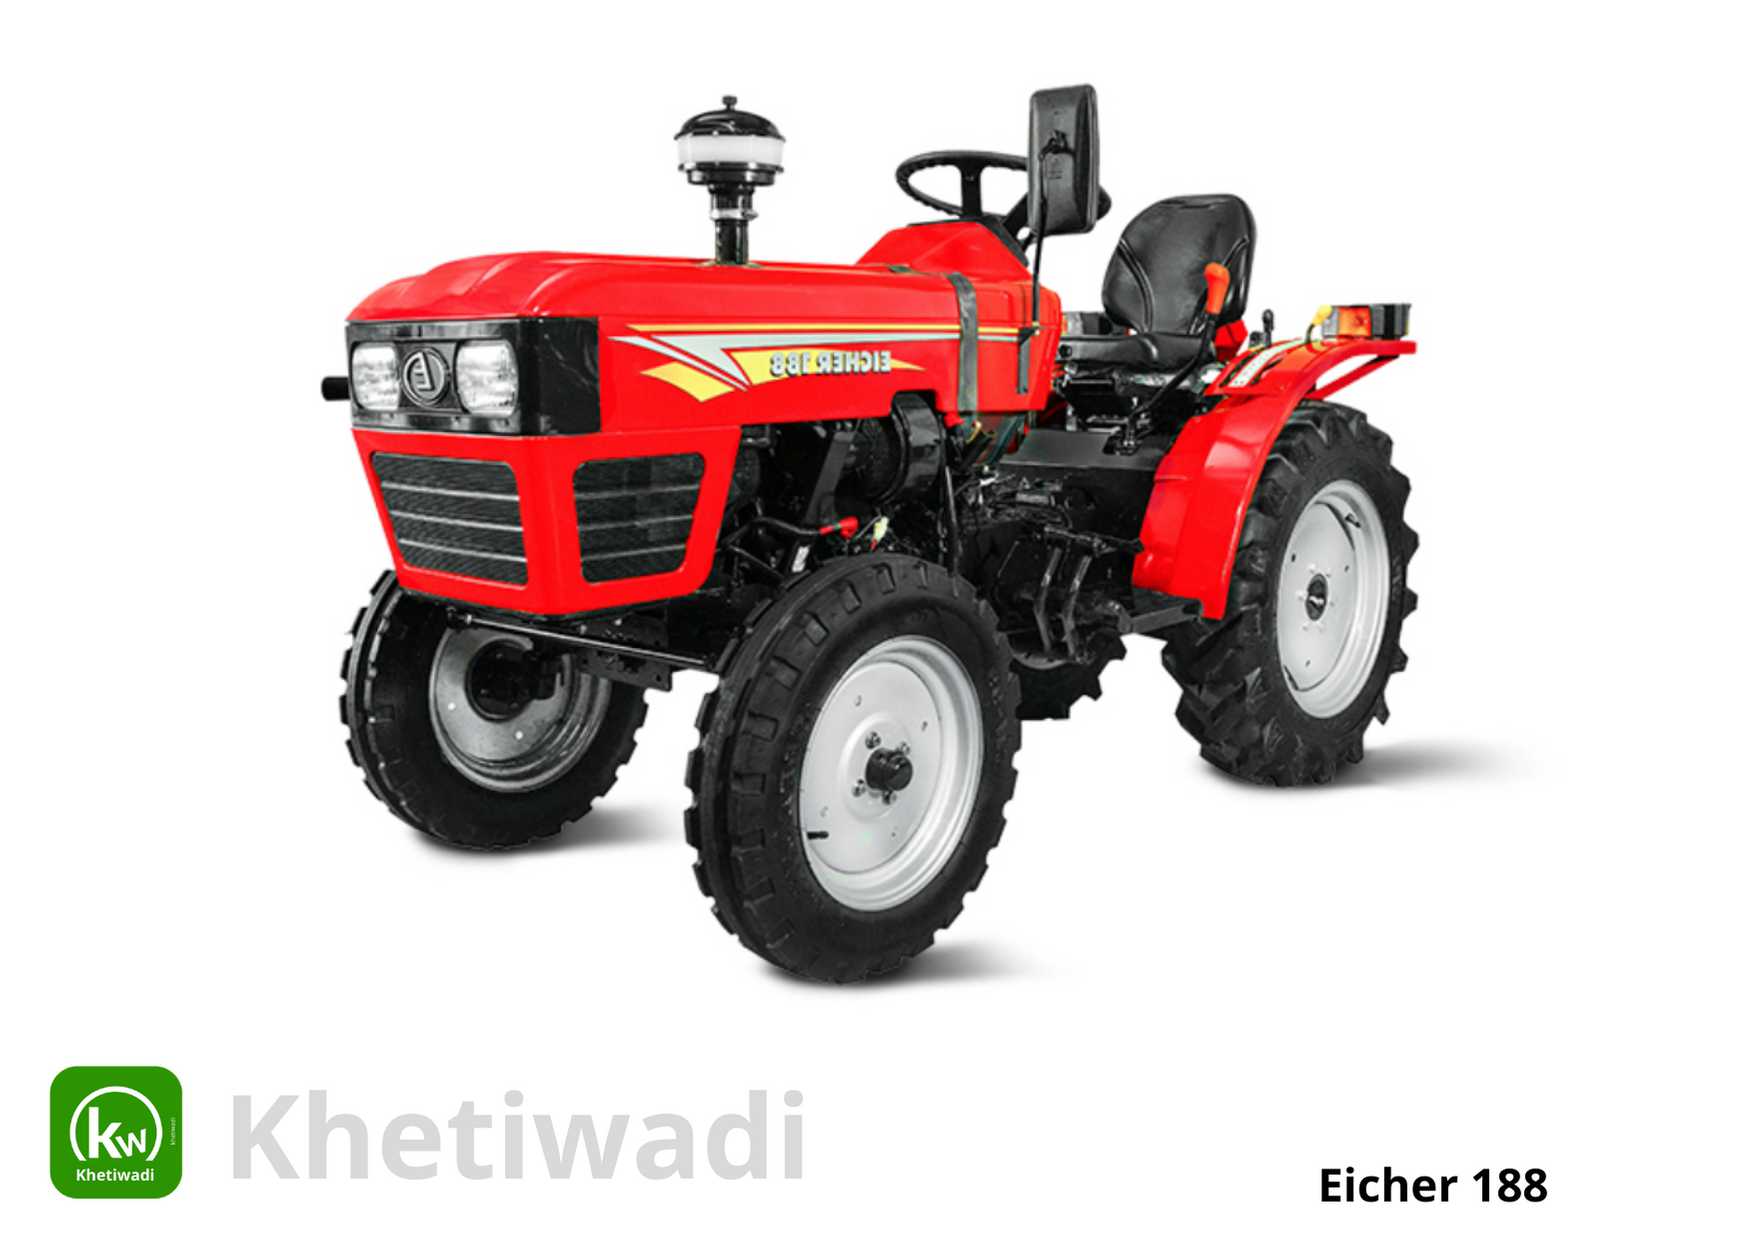 eicher 188 tractor price